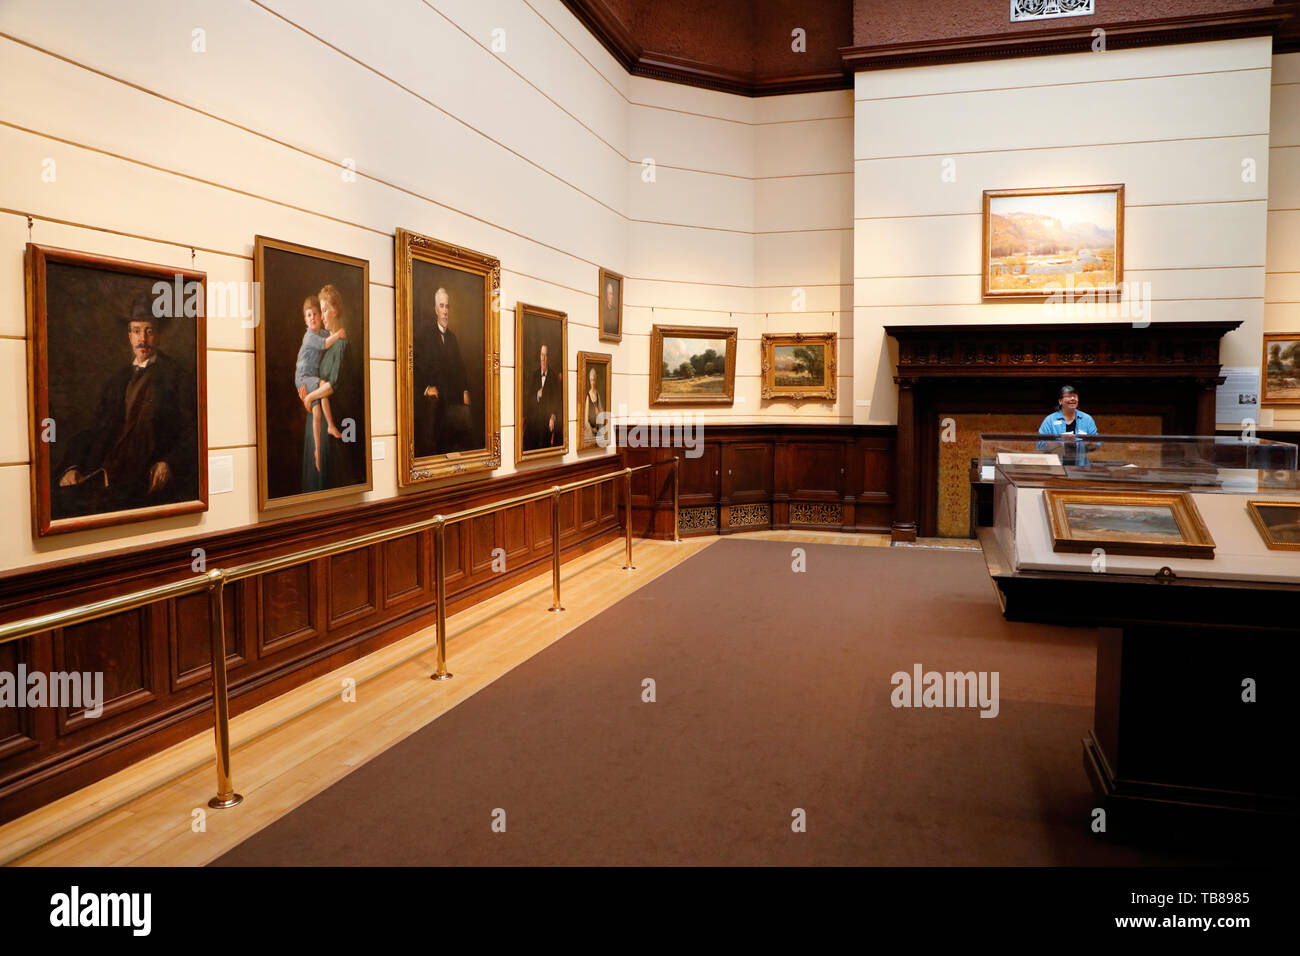 Die Kunstgalerie im Haus der historischen Railroad Tycoon James J. Hill. Saint Paul Minnesota USA.. Stockfoto